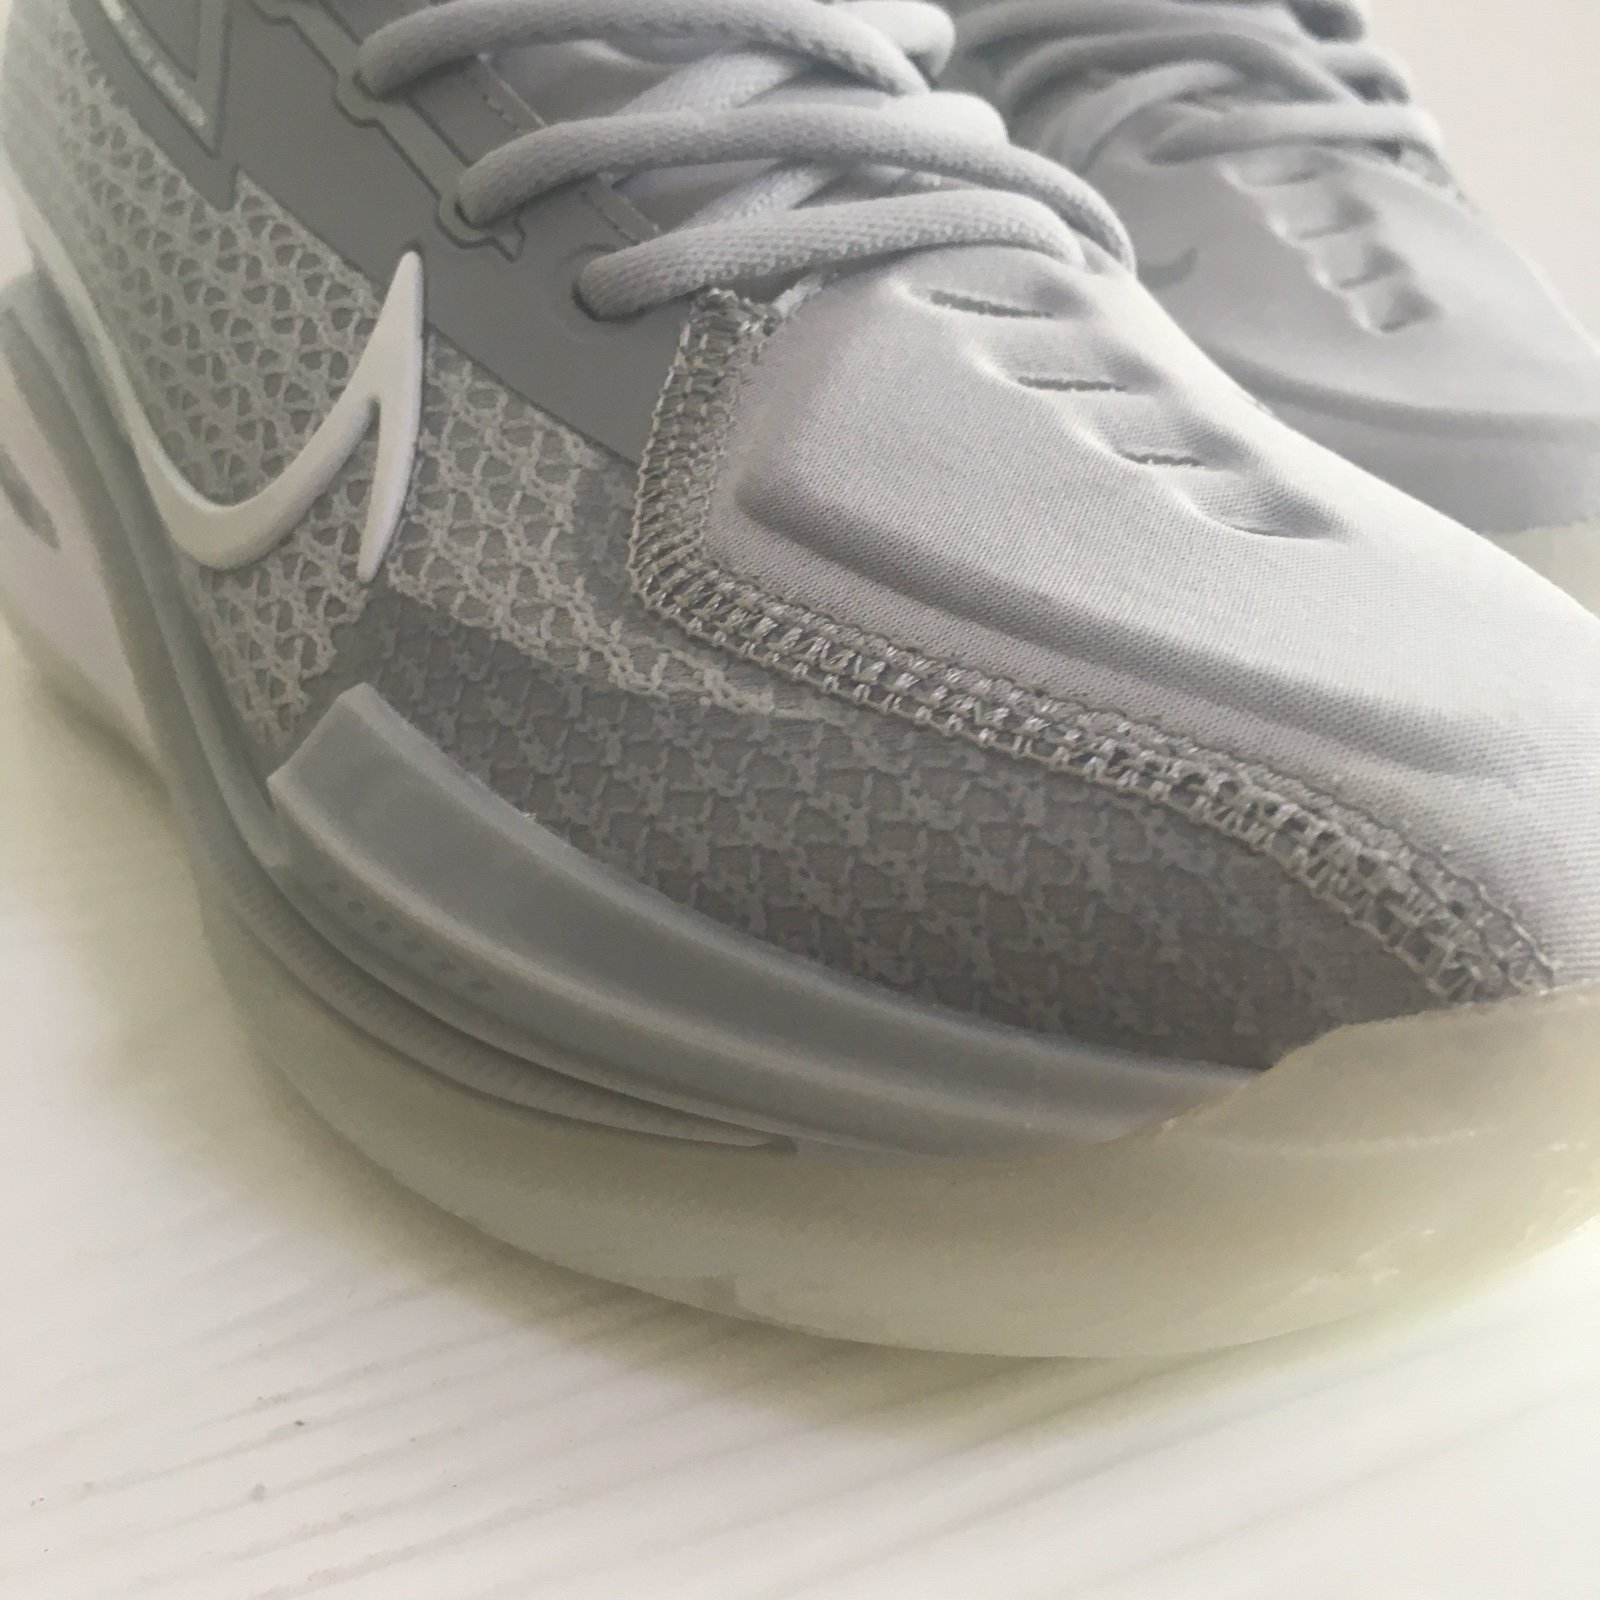 Gorgeous Nike cut 1 GT grey FF9AjWWmt Great